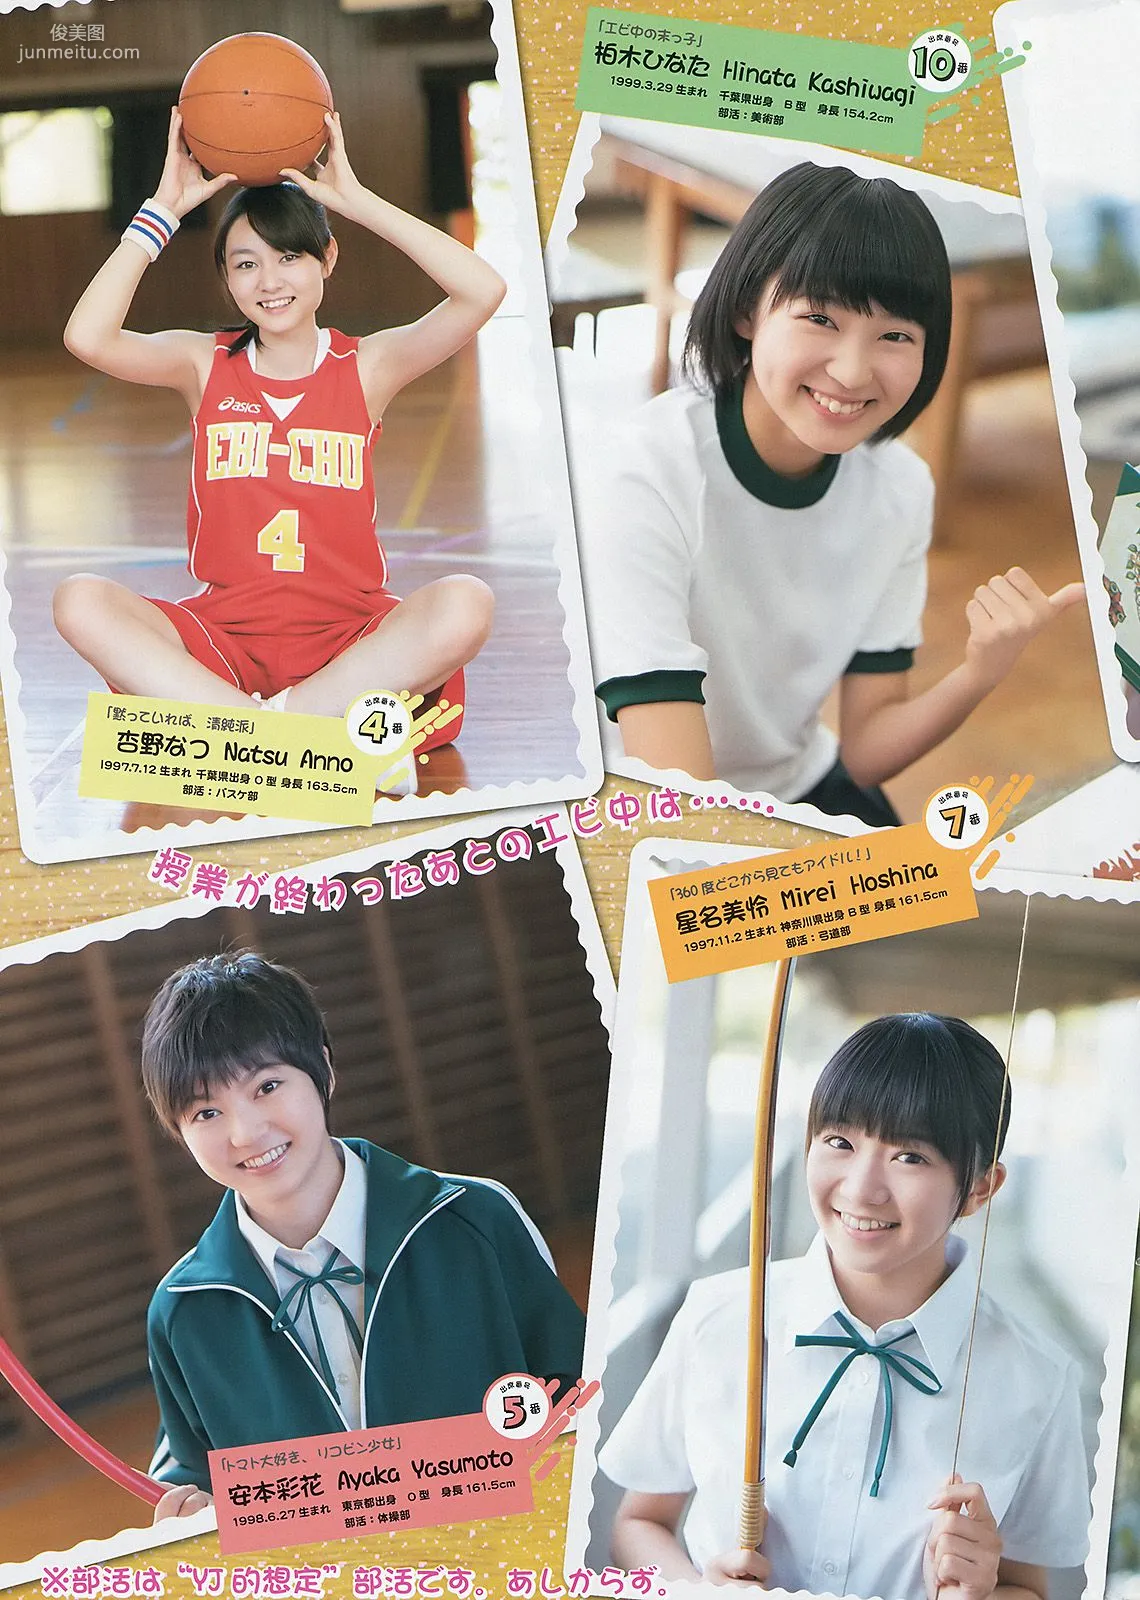 橋本奈々未 百川晴香 私立恵比寿中学 [Weekly Young Jump] 2013年No.51 写真杂志17